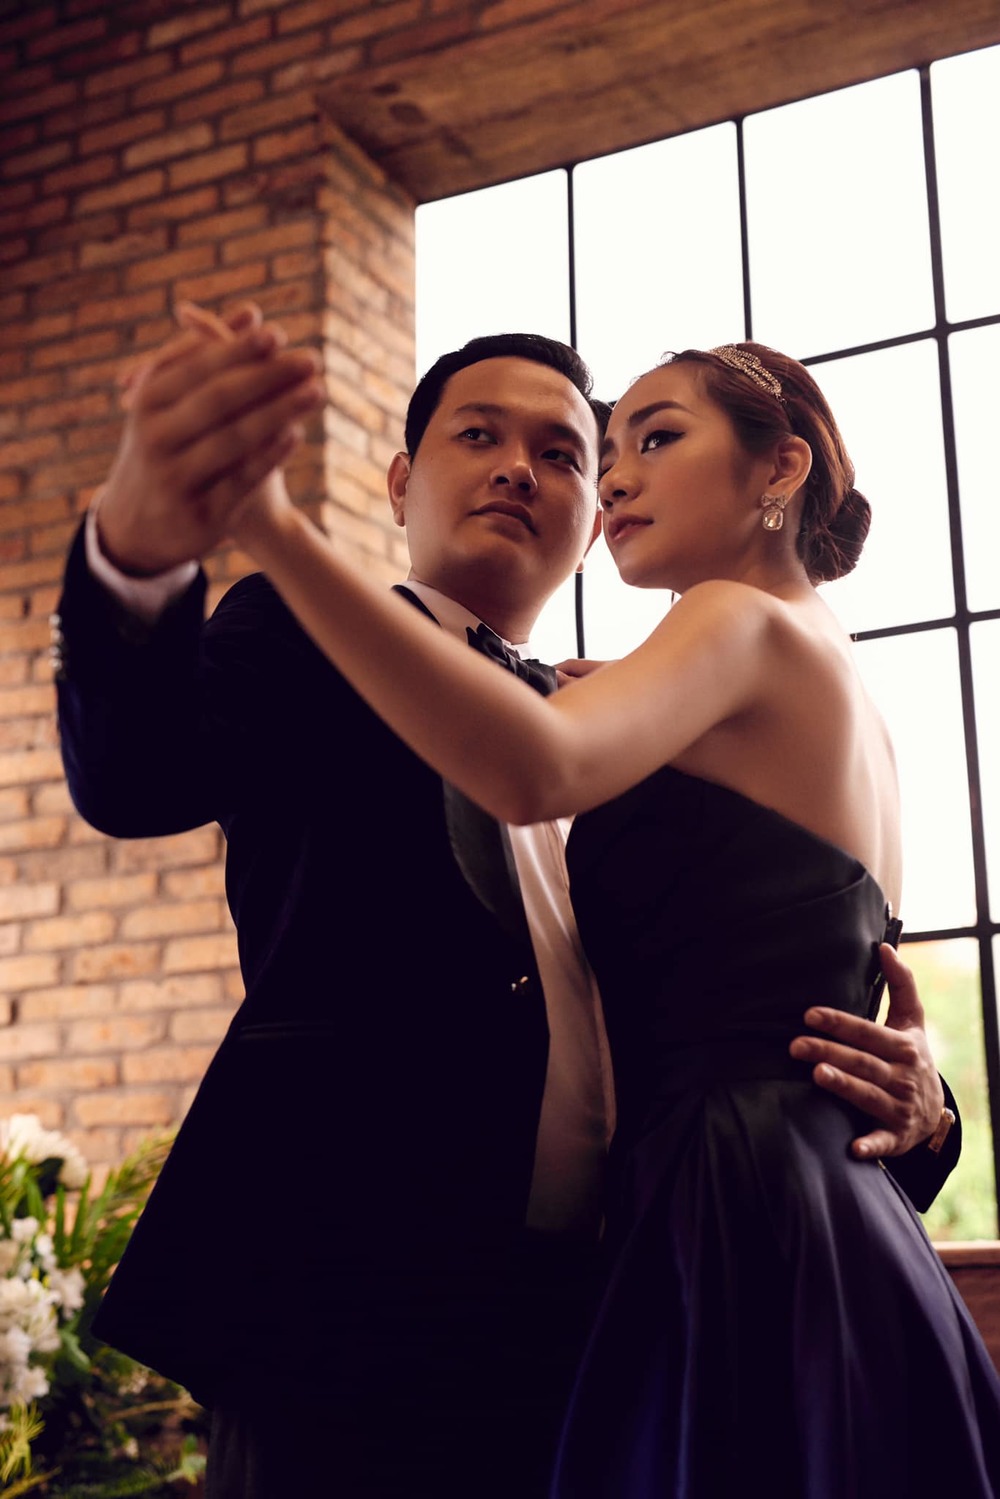  
Diệu Minh kết hôn cùng Minh Hải vào năm 2018. (Ảnh: FBNV) - Tin sao Viet - Tin tuc sao Viet - Scandal sao Viet - Tin tuc cua Sao - Tin cua Sao